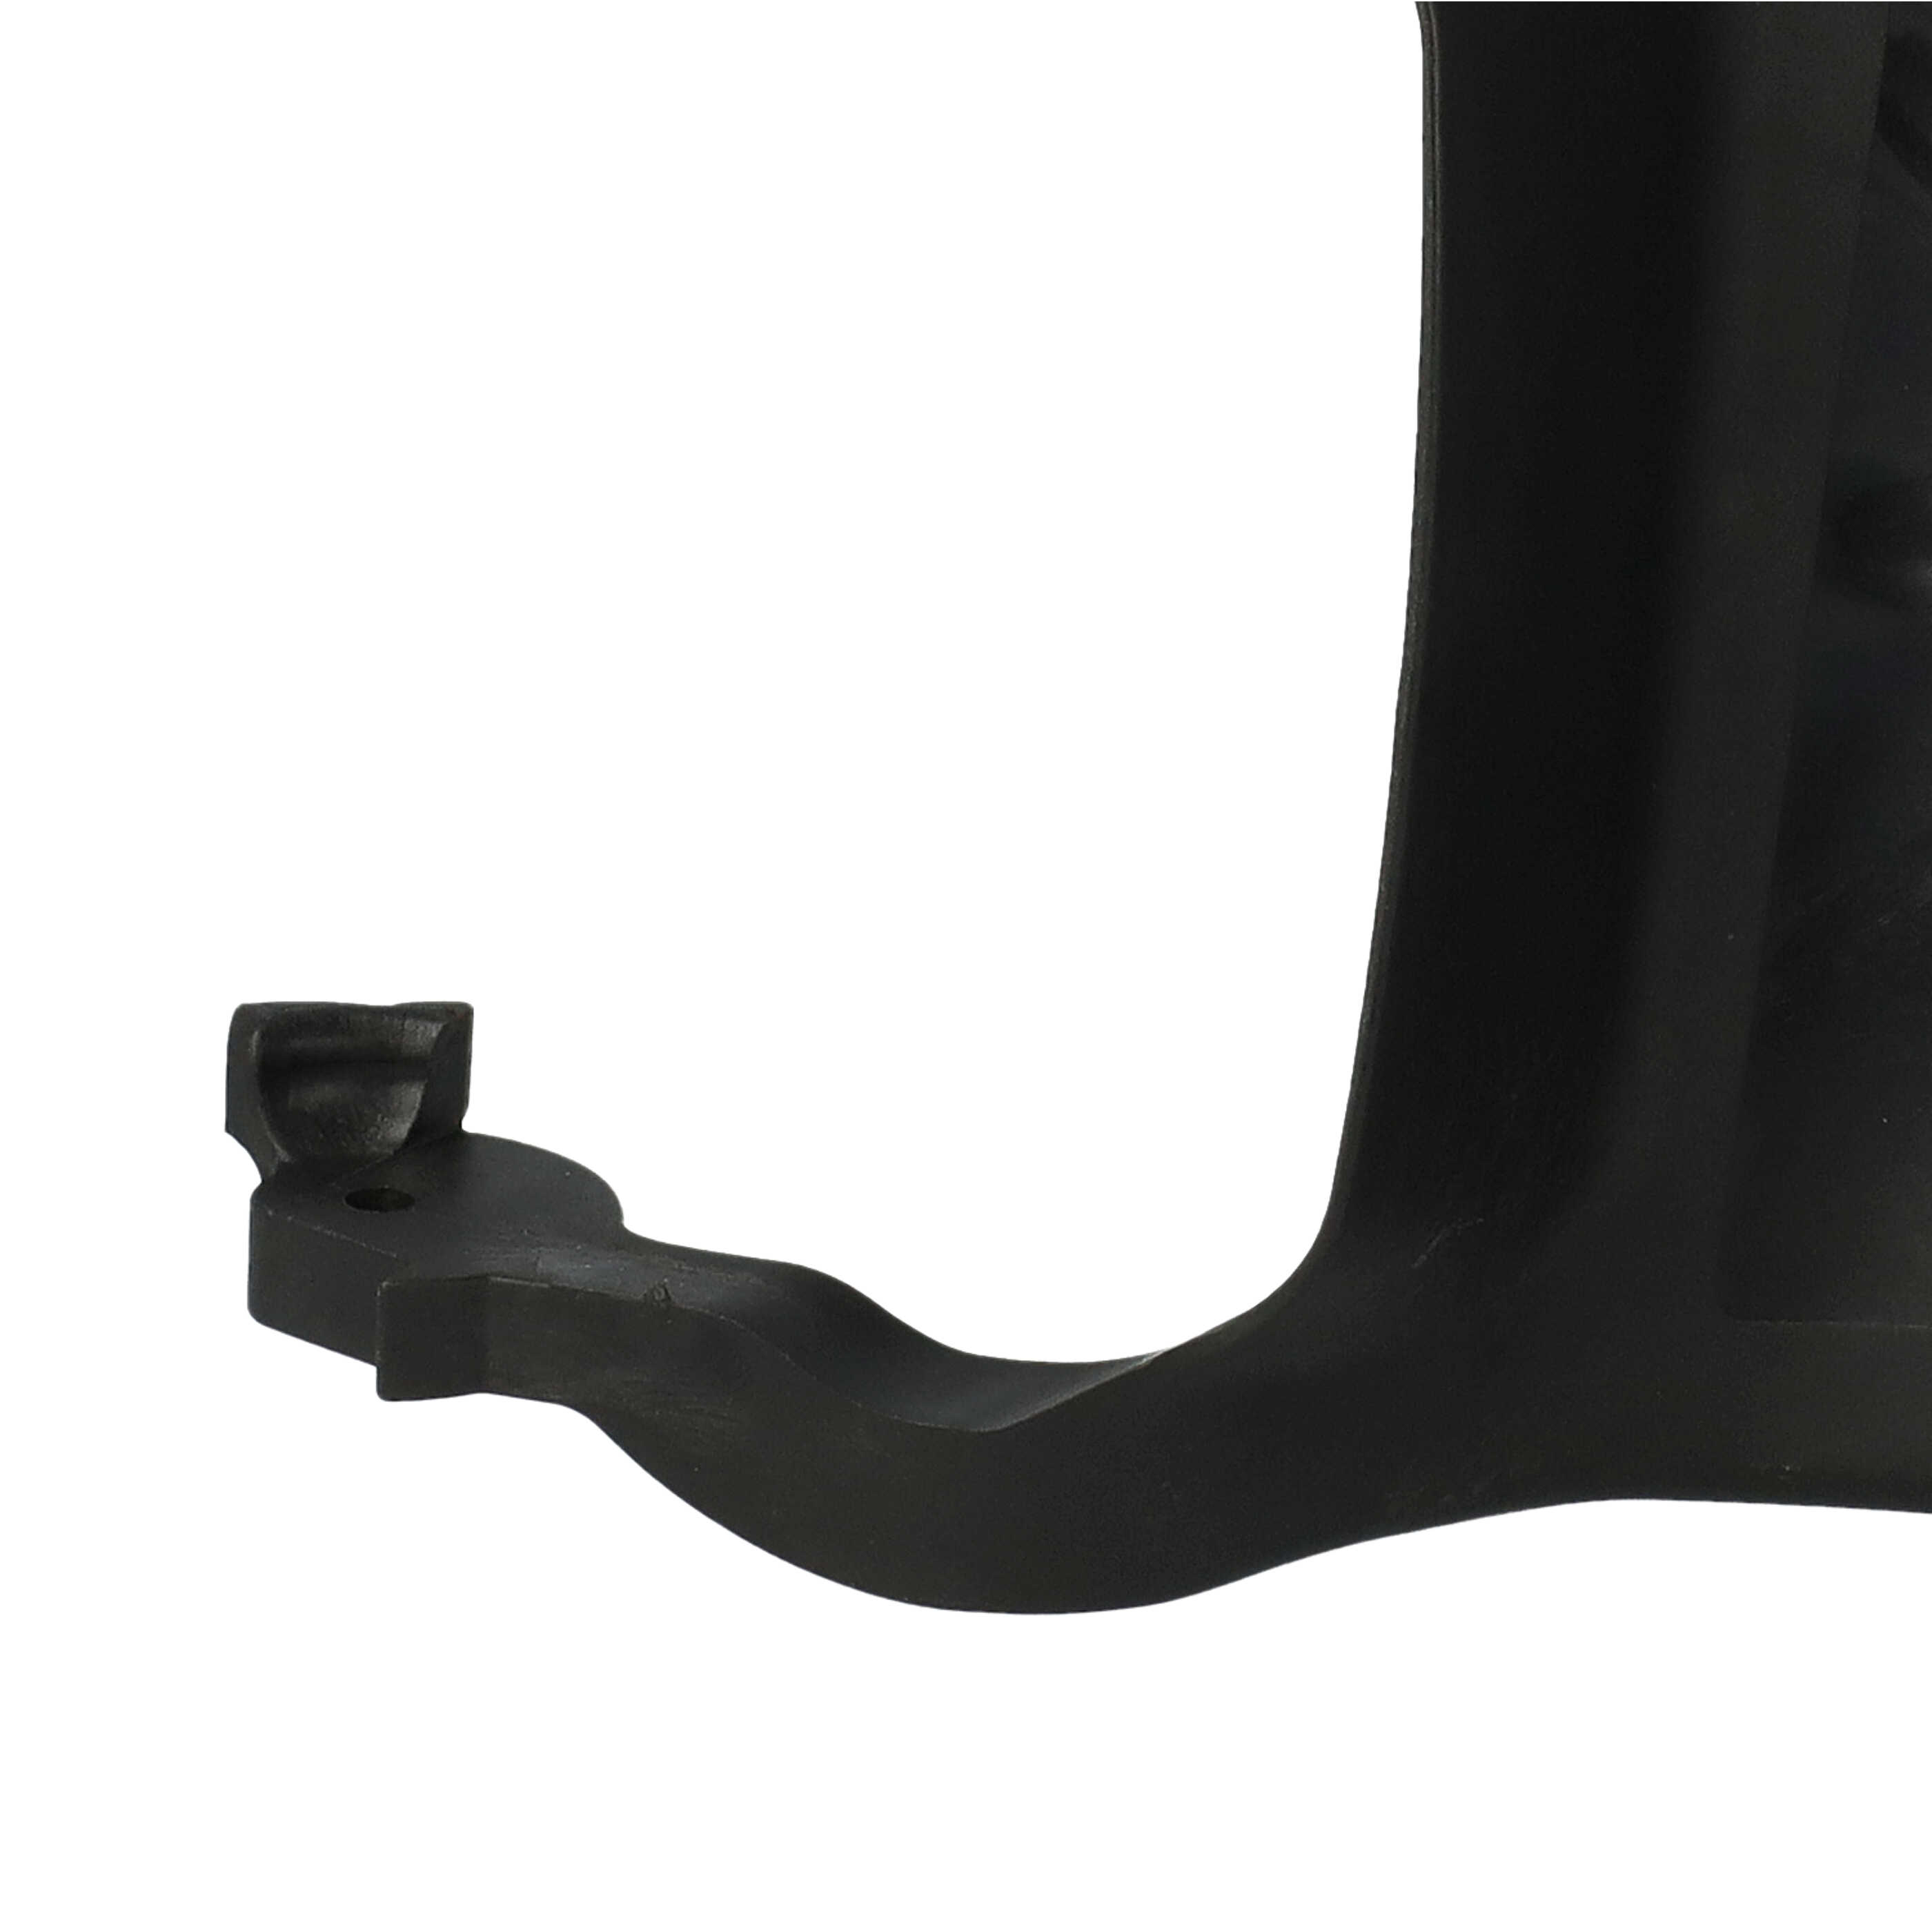 Protector de mano reemplaza Stihl 1143 792 9103 compatible con Stihl motosierra - 18,5 x 15,5 x 4 cm negro